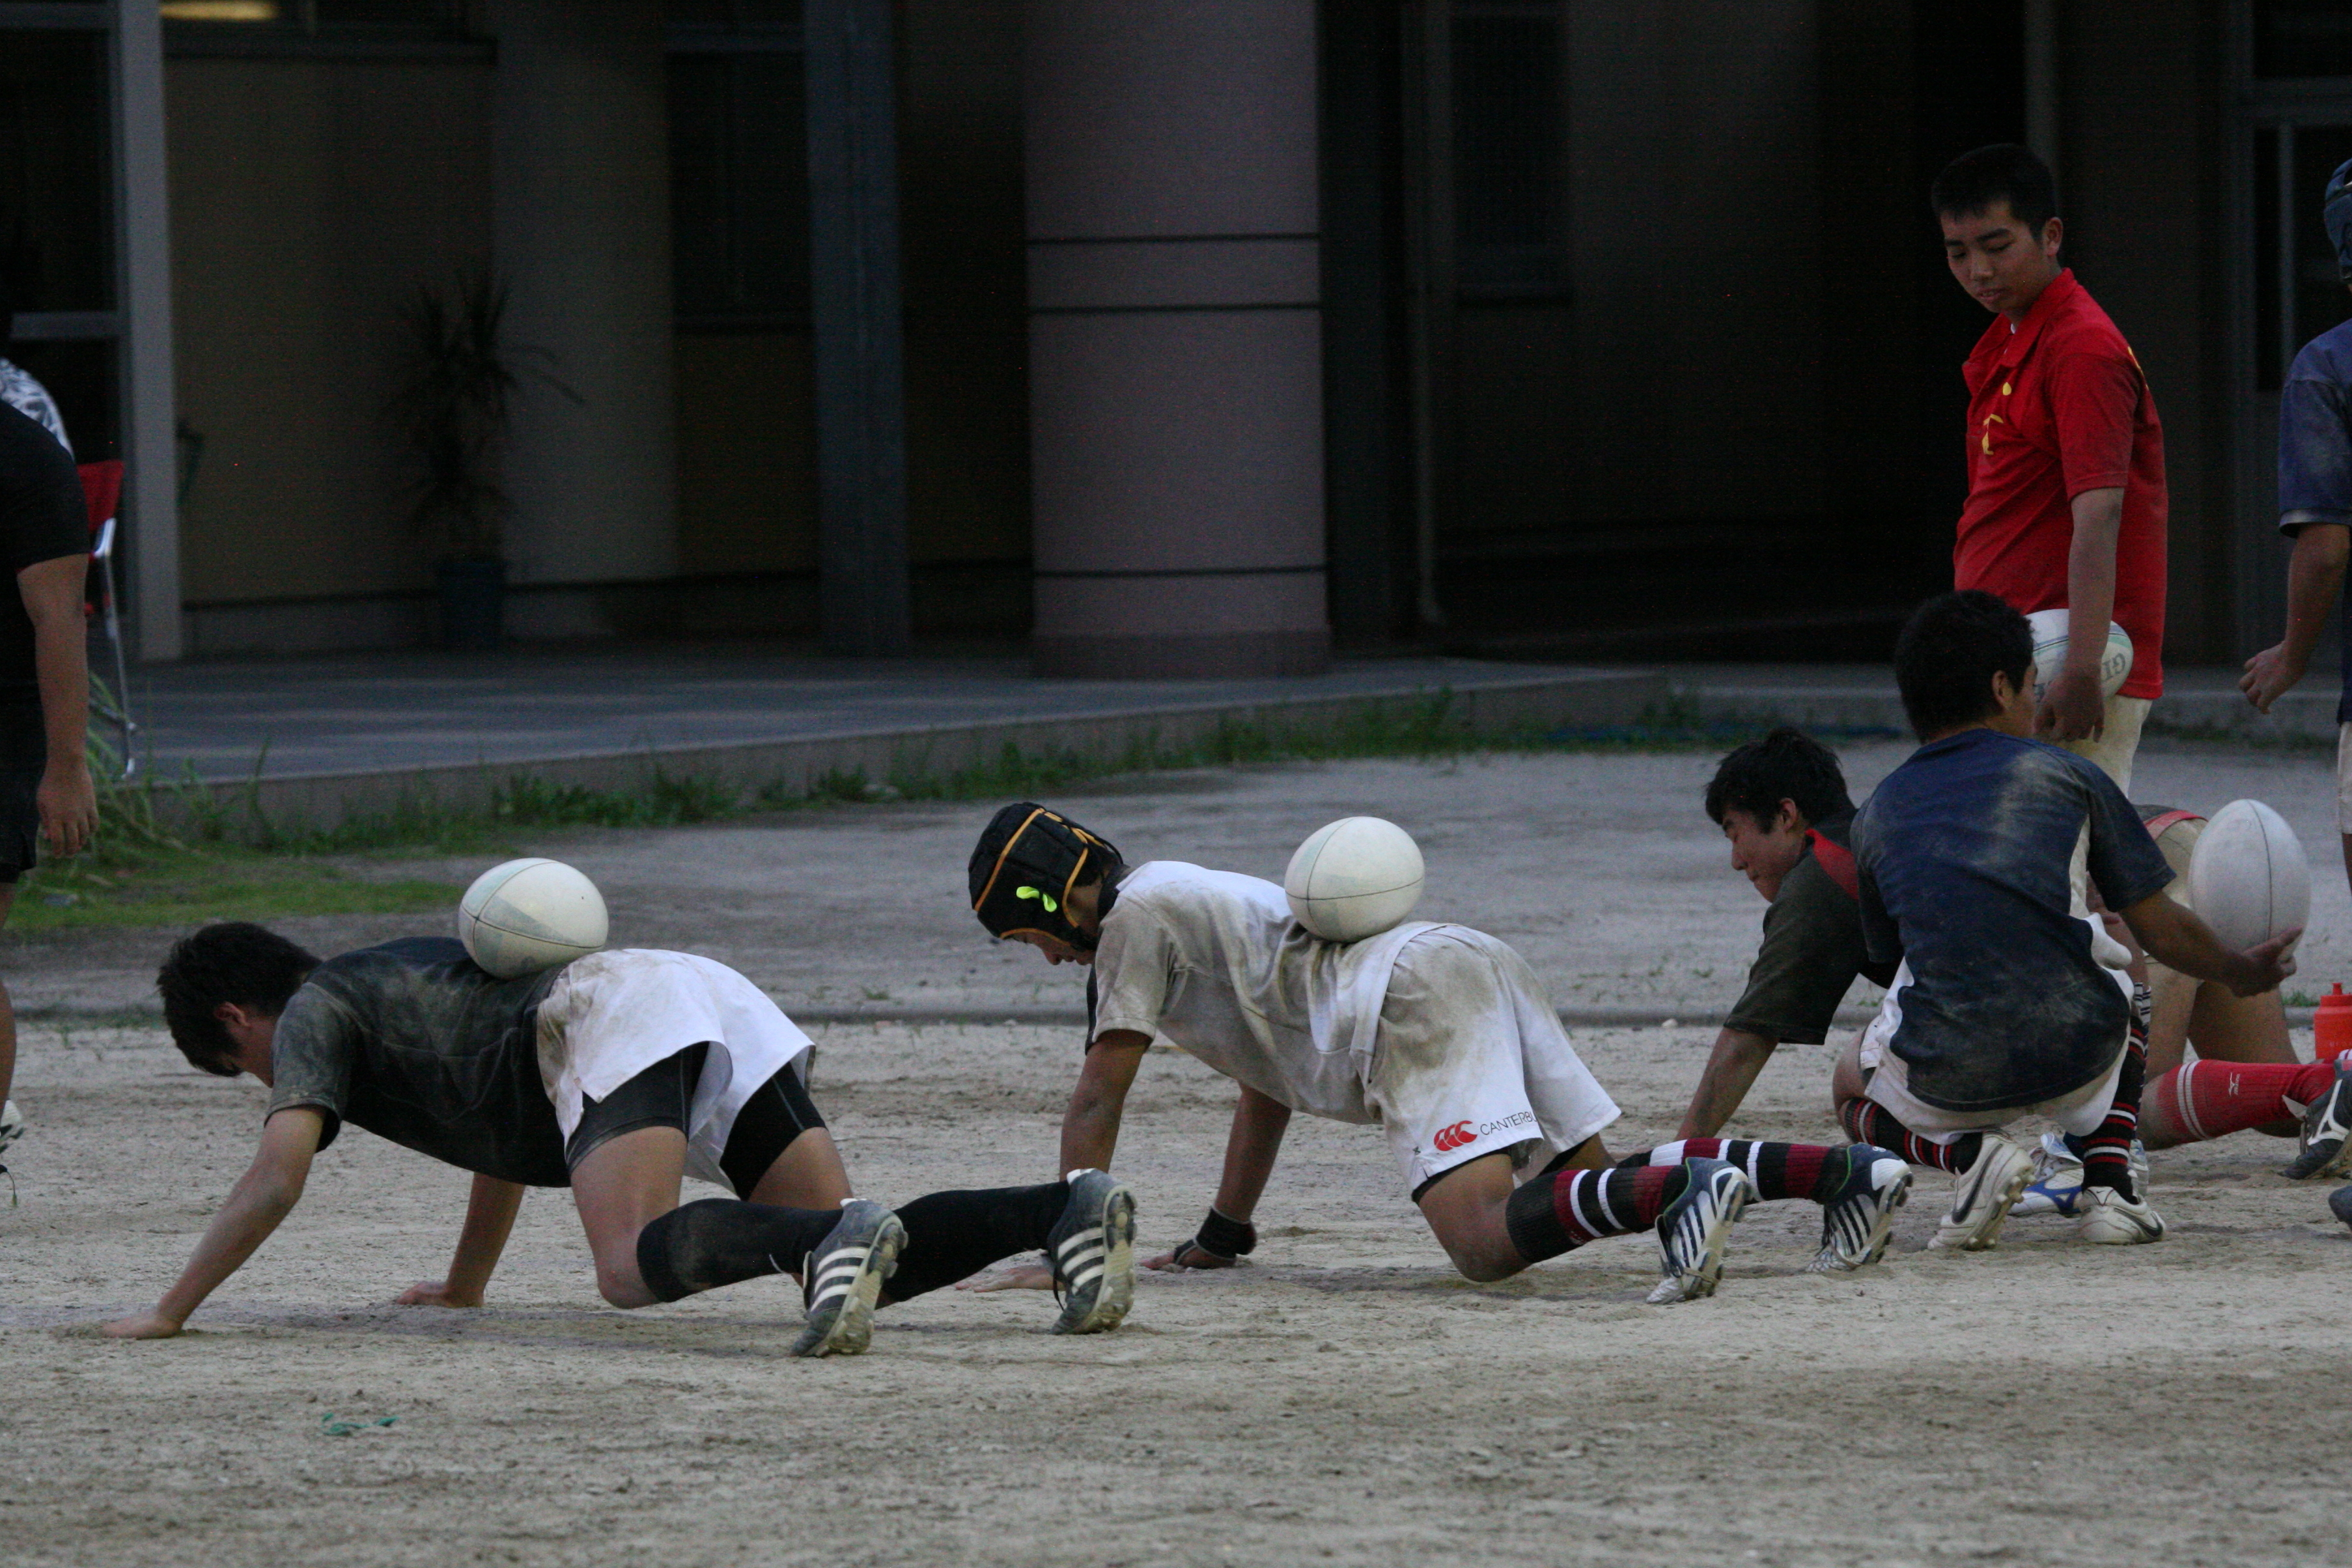 http://kokura-rugby.sakura.ne.jp/2010.7.31%E7%B7%B4%E7%BF%92%E9%A2%A8%E6%99%AF-3.JPG